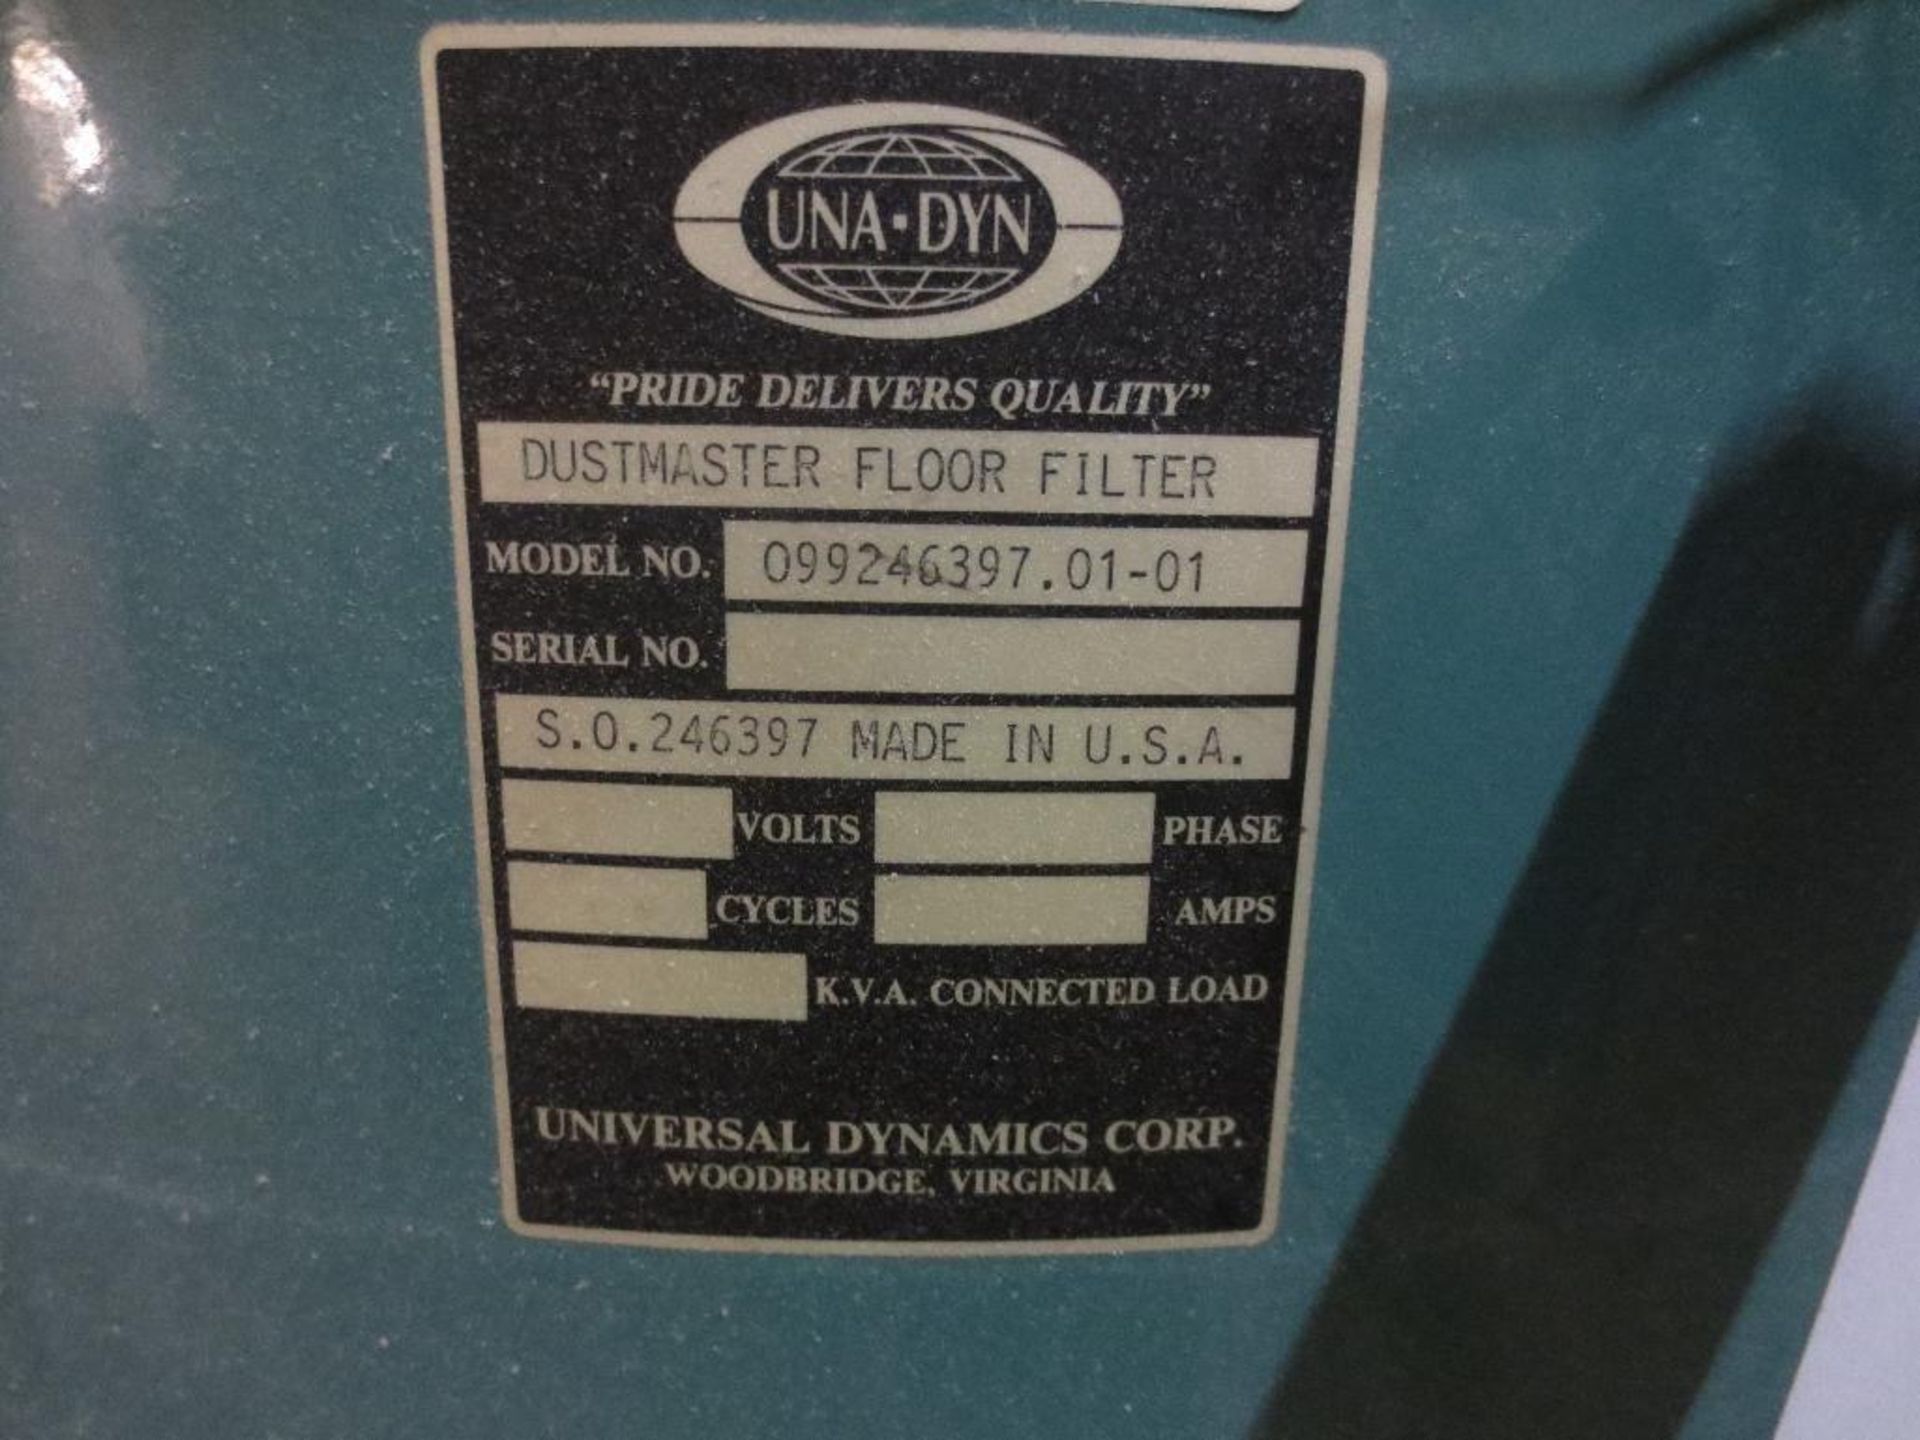 Una-Dyn Dustmaster Floor Filter M/N 099246397.01-01 - Image 2 of 2